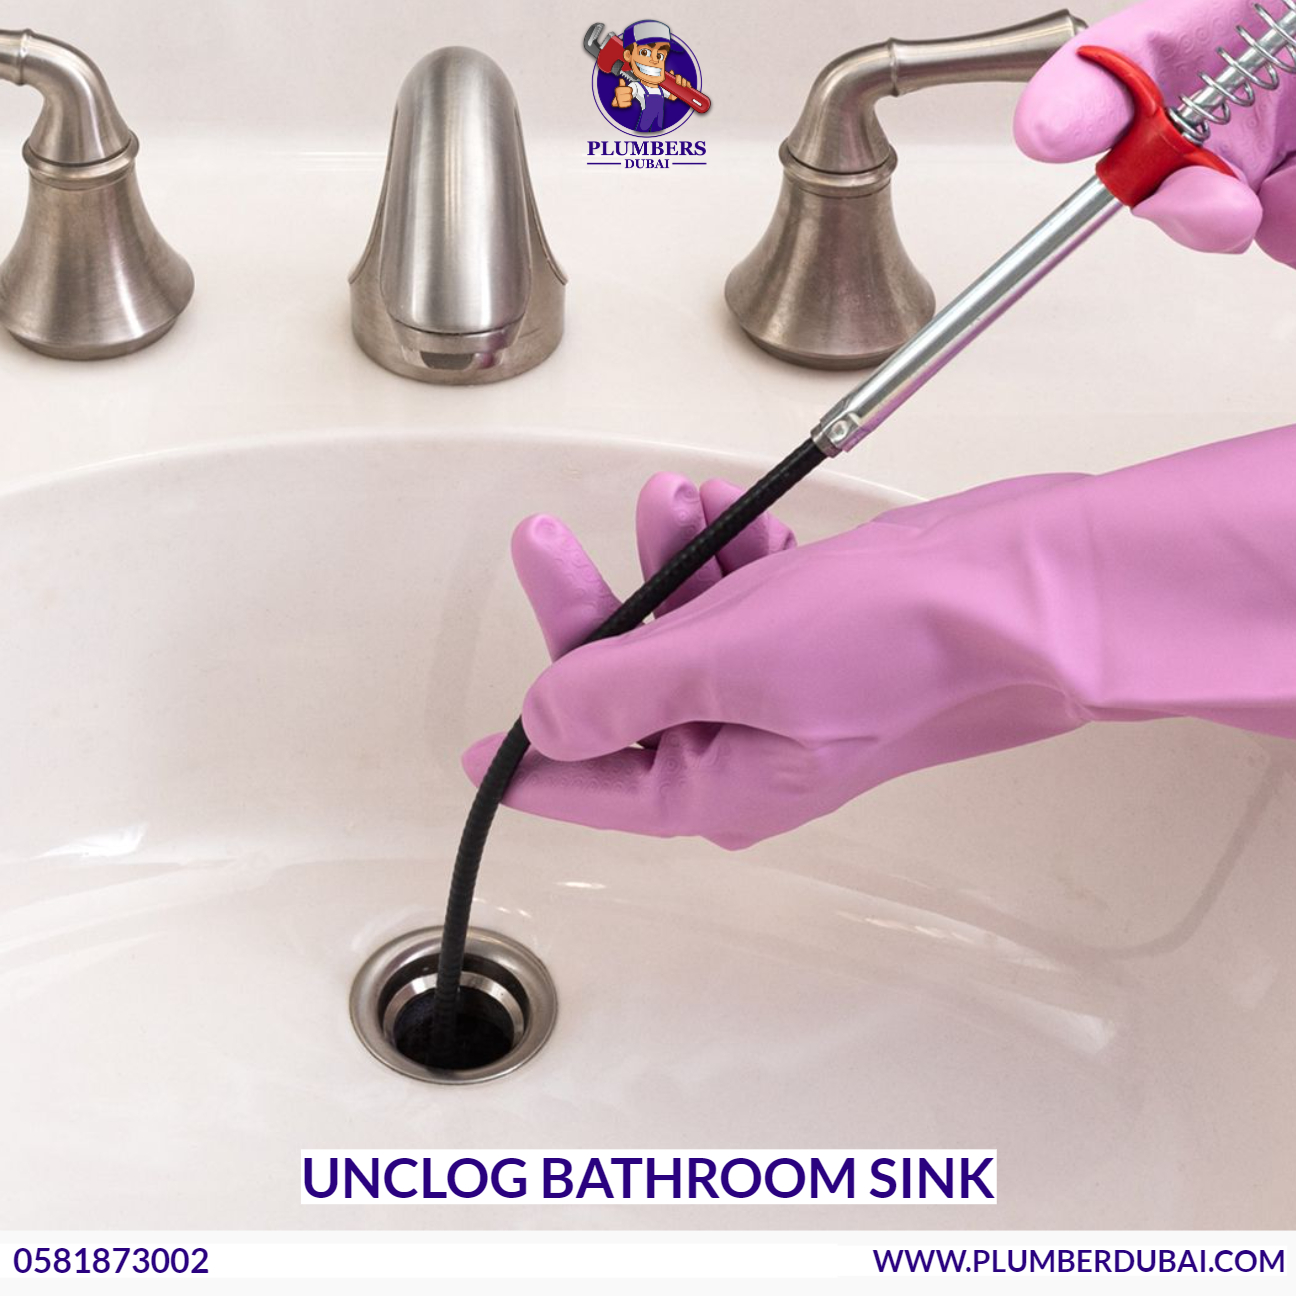 Unclog bathroom sink